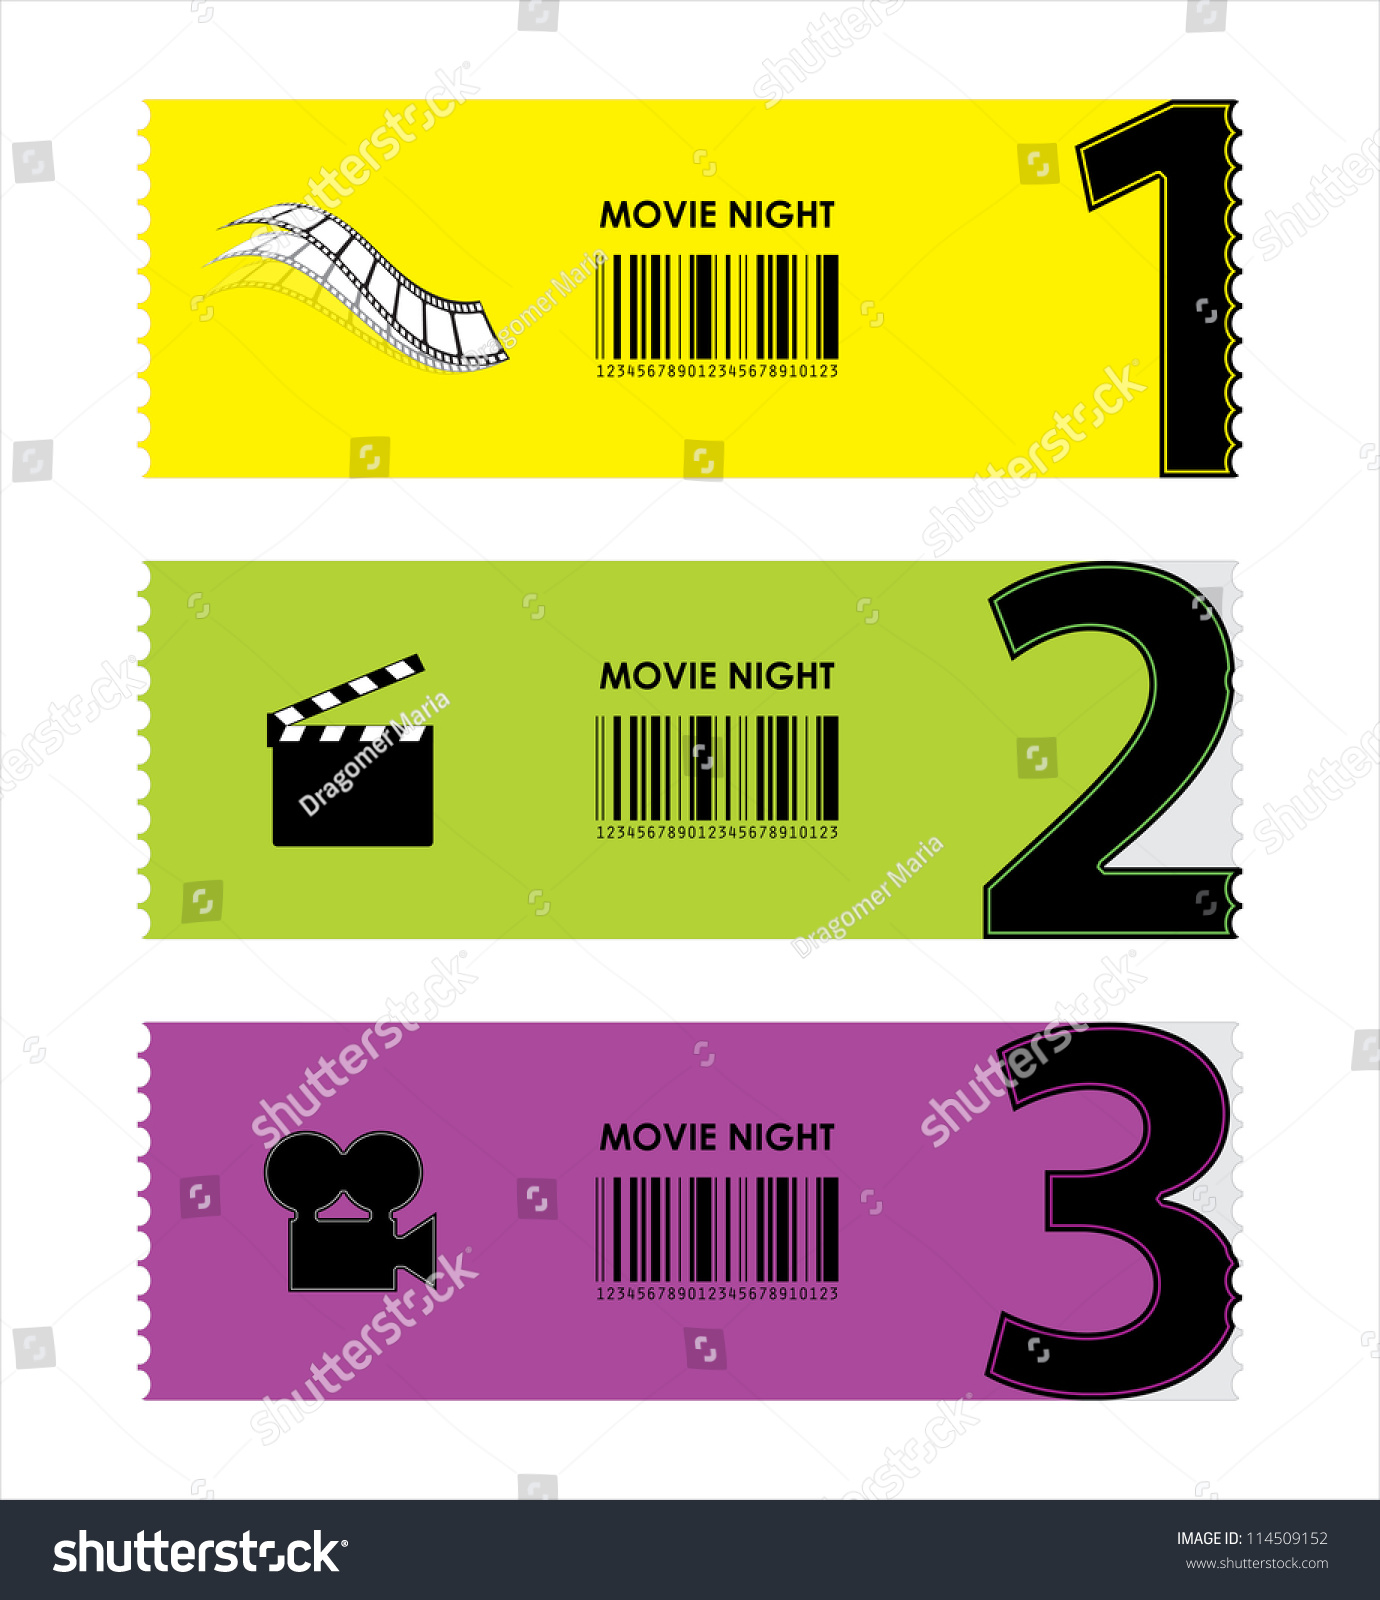 Movie Ticket Stock Vector Illustration 114509152 : Shutterstock